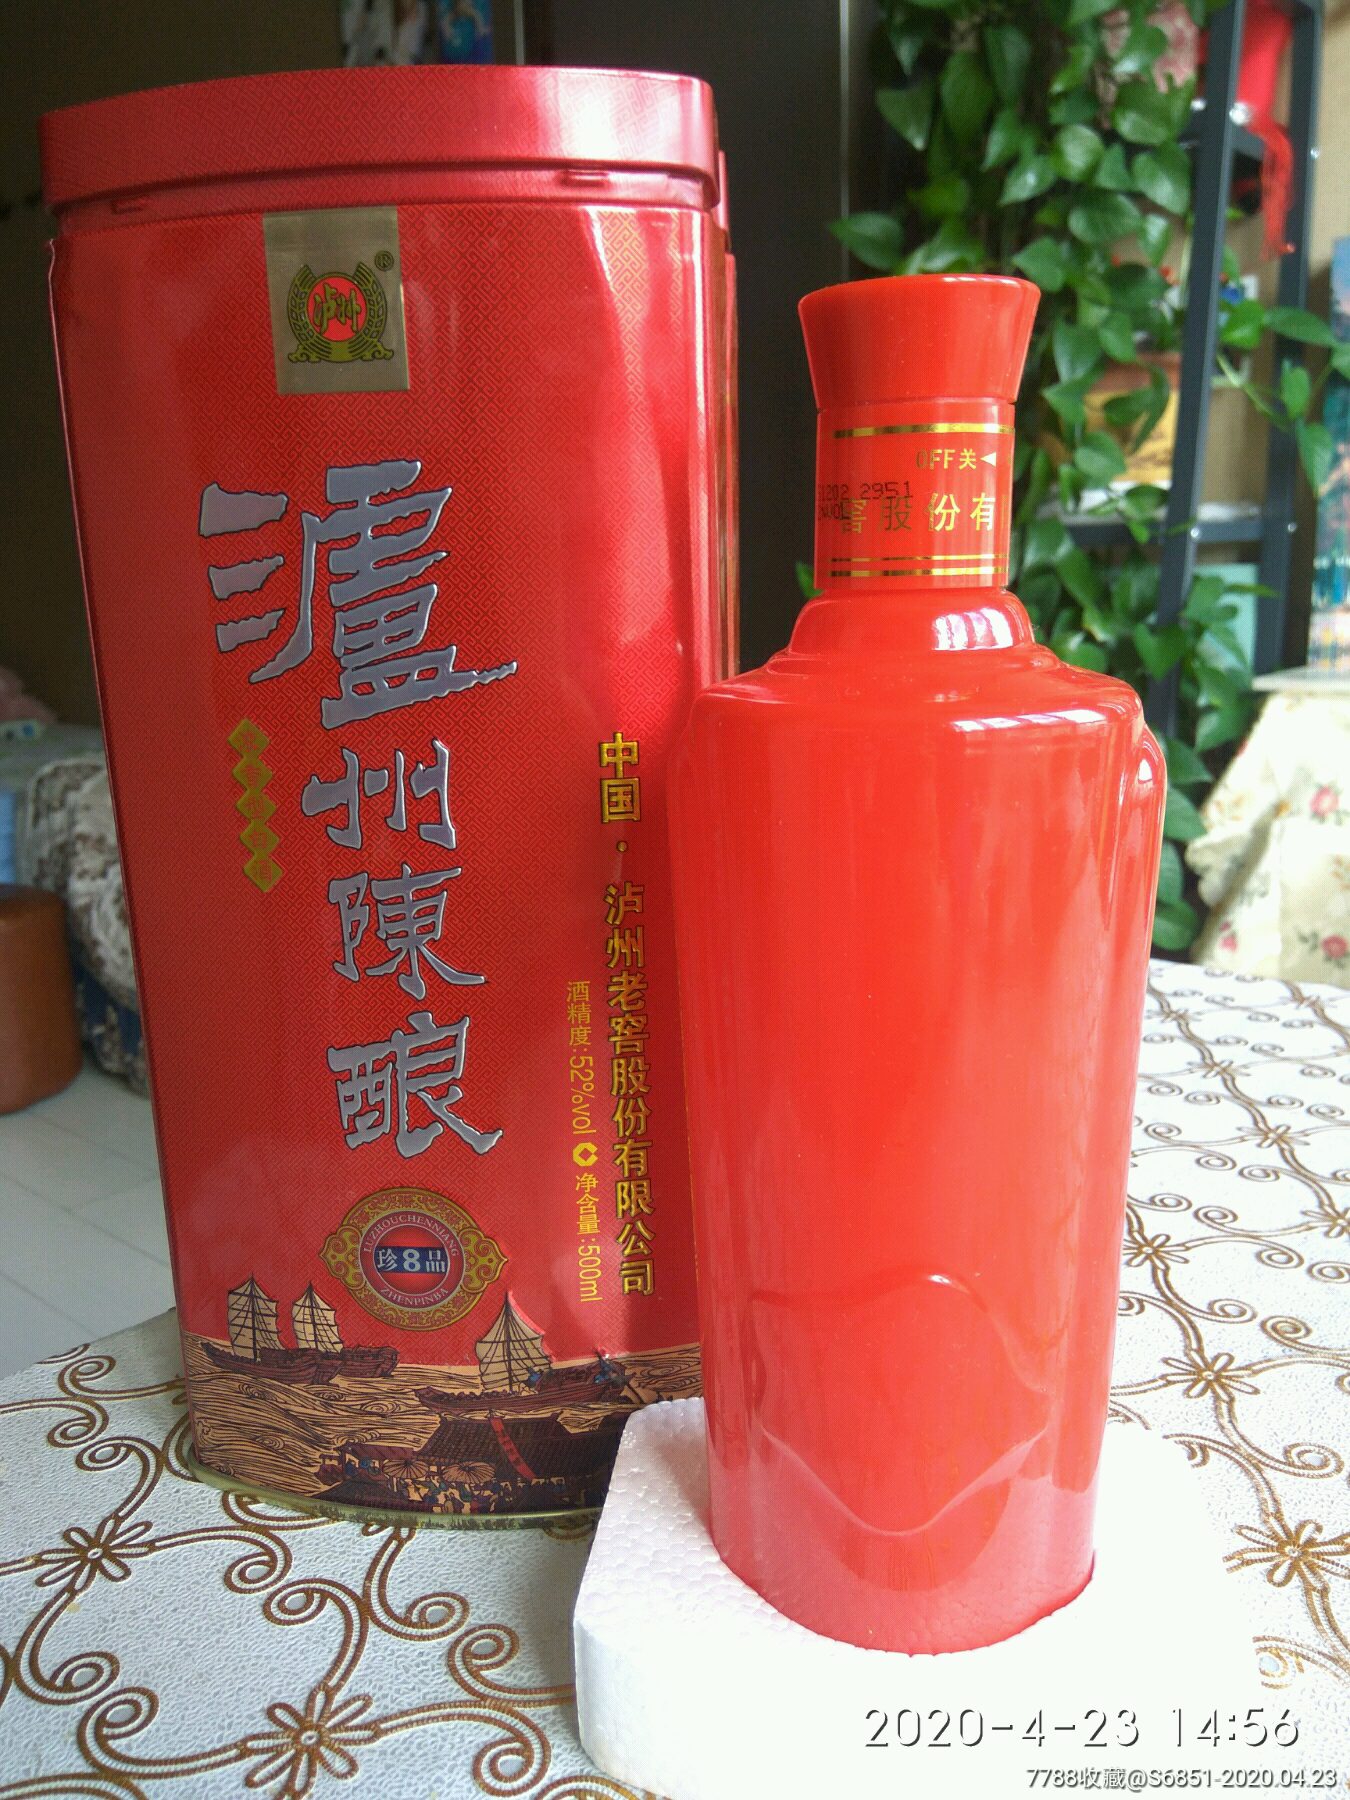 泸州老窖生产的泸州陈酿酒瓶带铁盒包邮